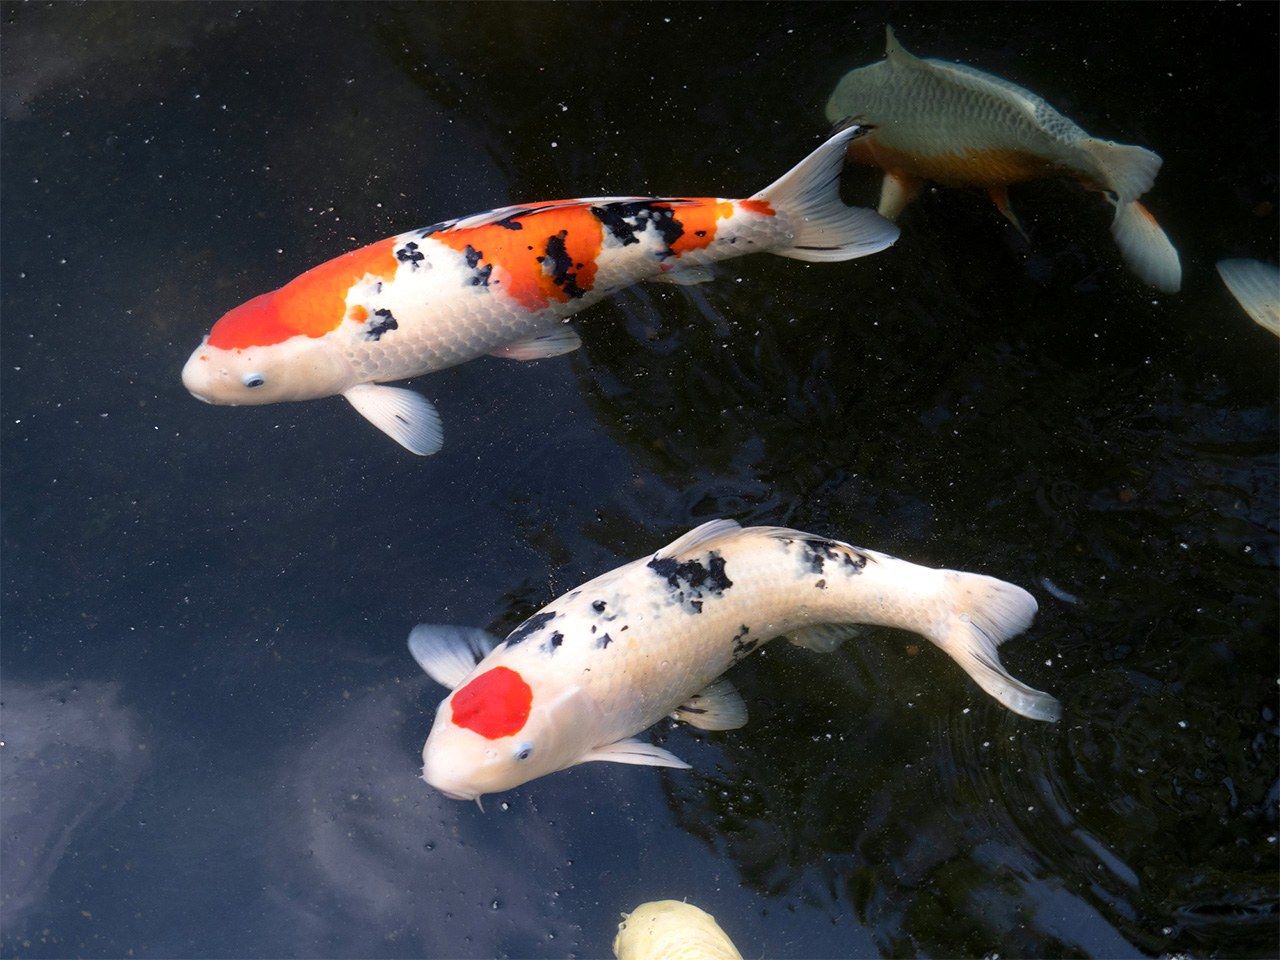  كانت أسماك ’’نيشيكيغوي‘‘ تستزرع في البداية بهدف الأكل، ولكنها أصبحت لاحقا تربى من أجل ألوانها المتنوعة (© بيكستا)